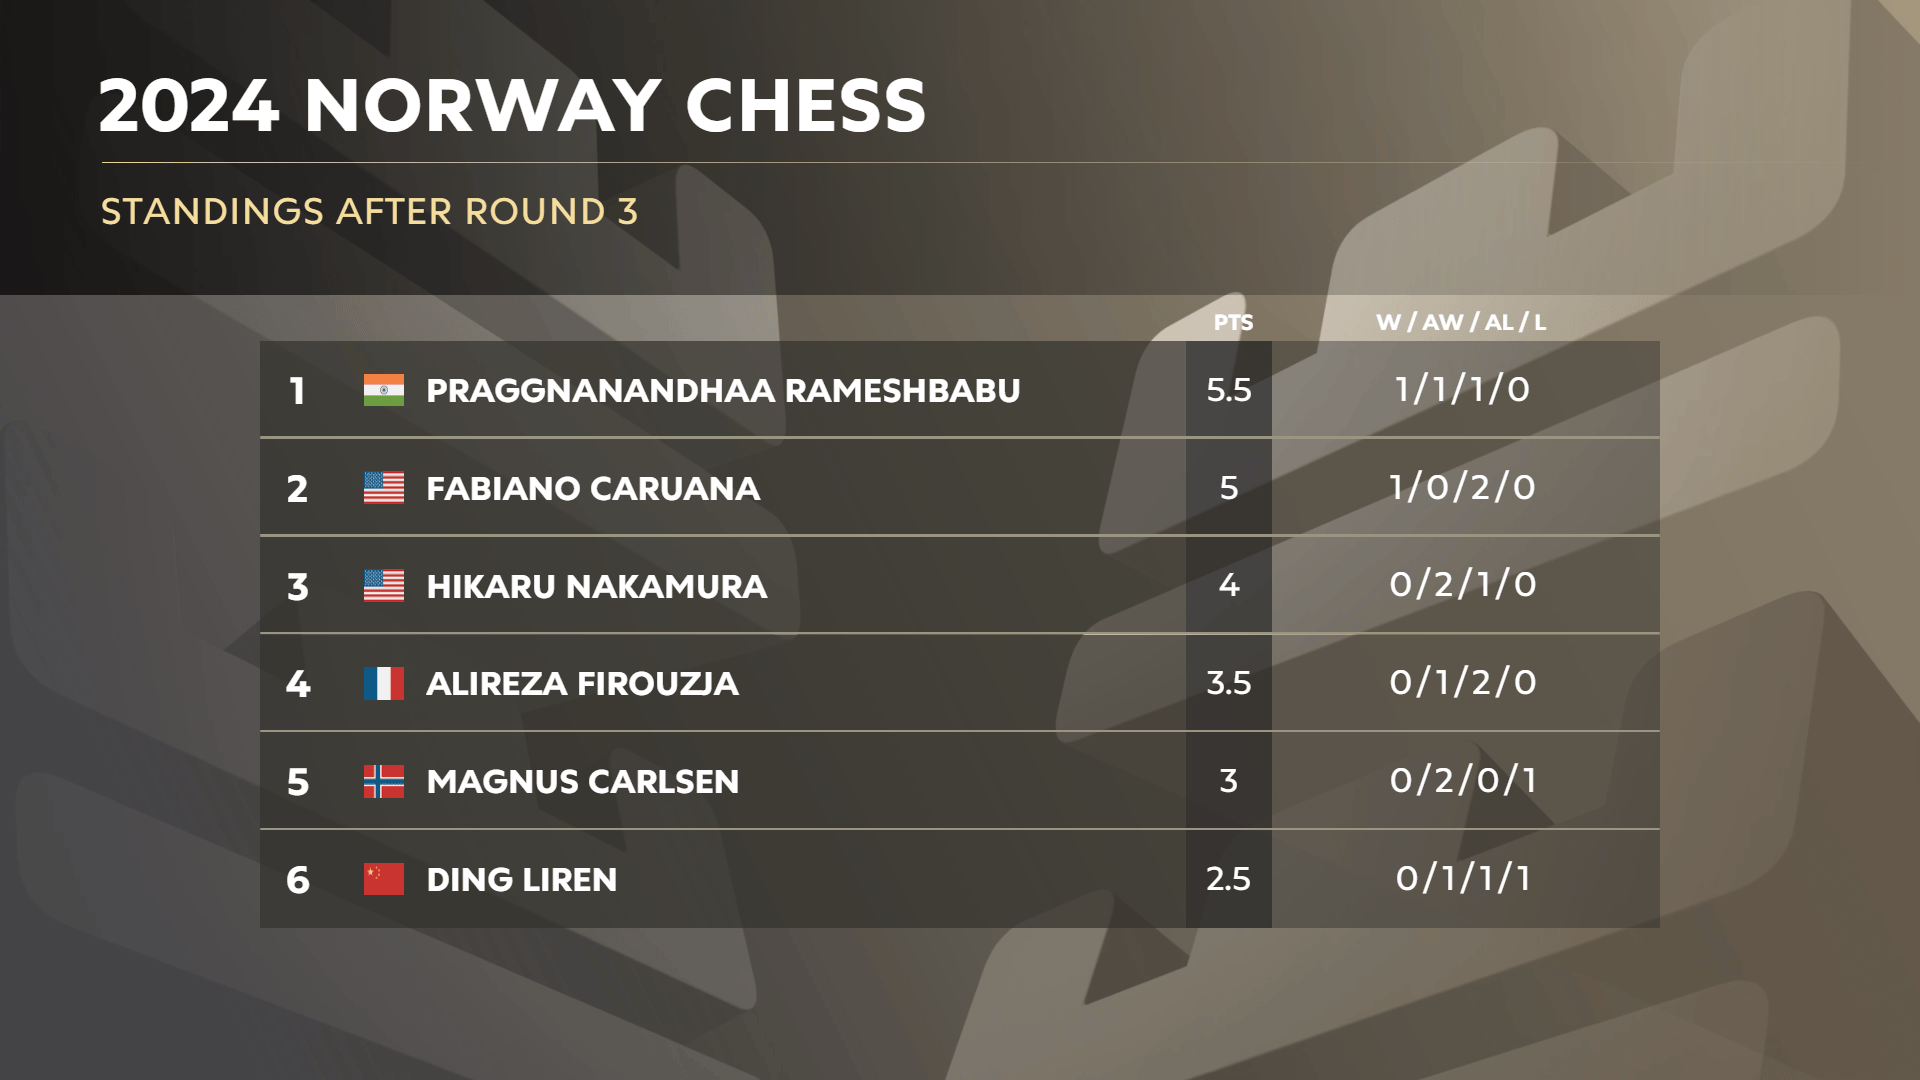 挪威国际象棋 2024 年第 3 轮排名